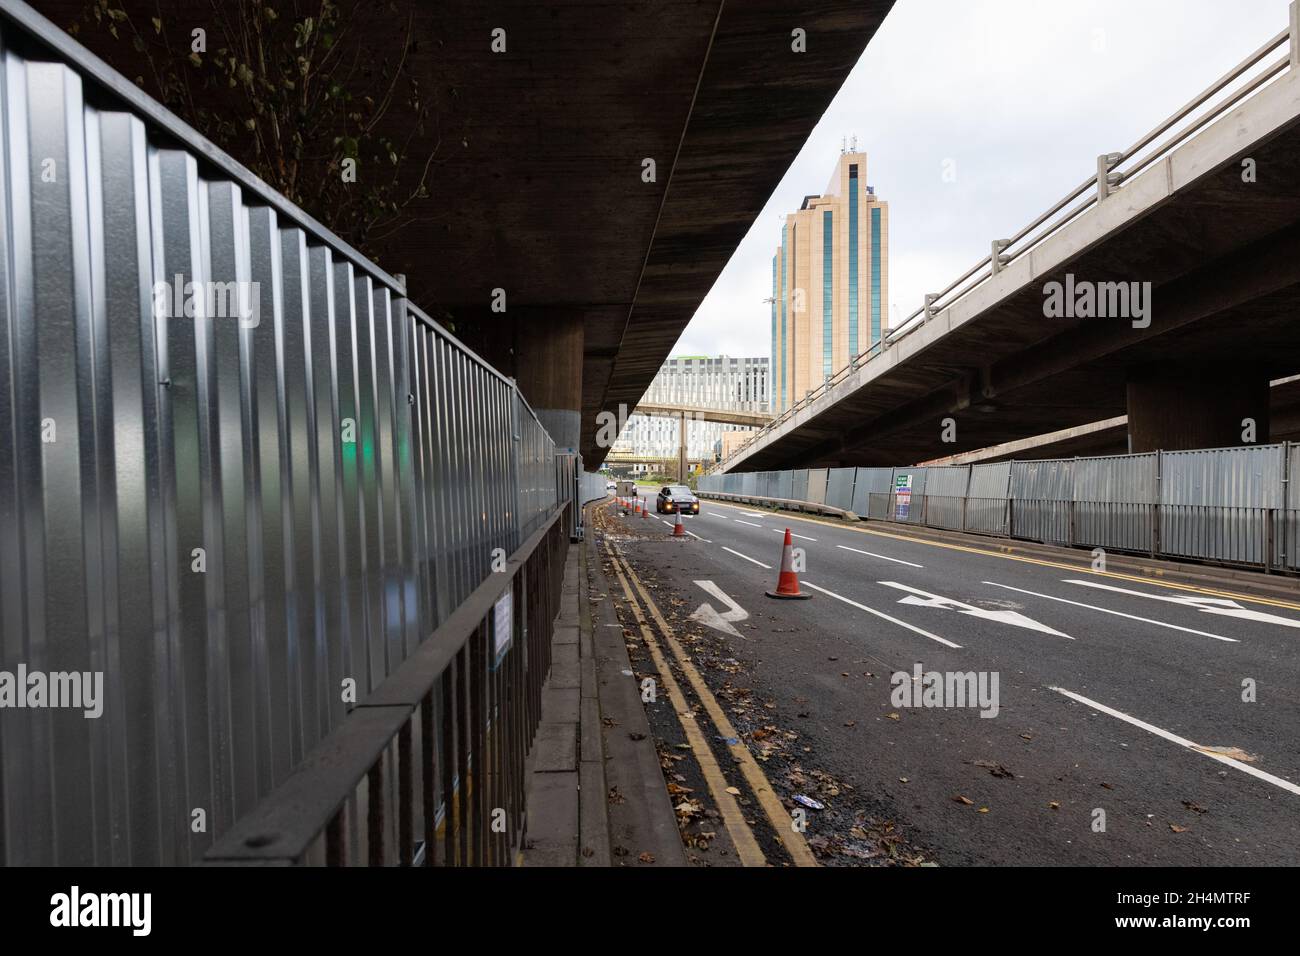 Clôtures métalliques de sécurité autour de la jonction 19 M8 autoroute Clydeside Expressway lors de la Conférence des Nations Unies sur les changements climatiques COP26, Glasgow, Écosse, Royaume-Uni Banque D'Images